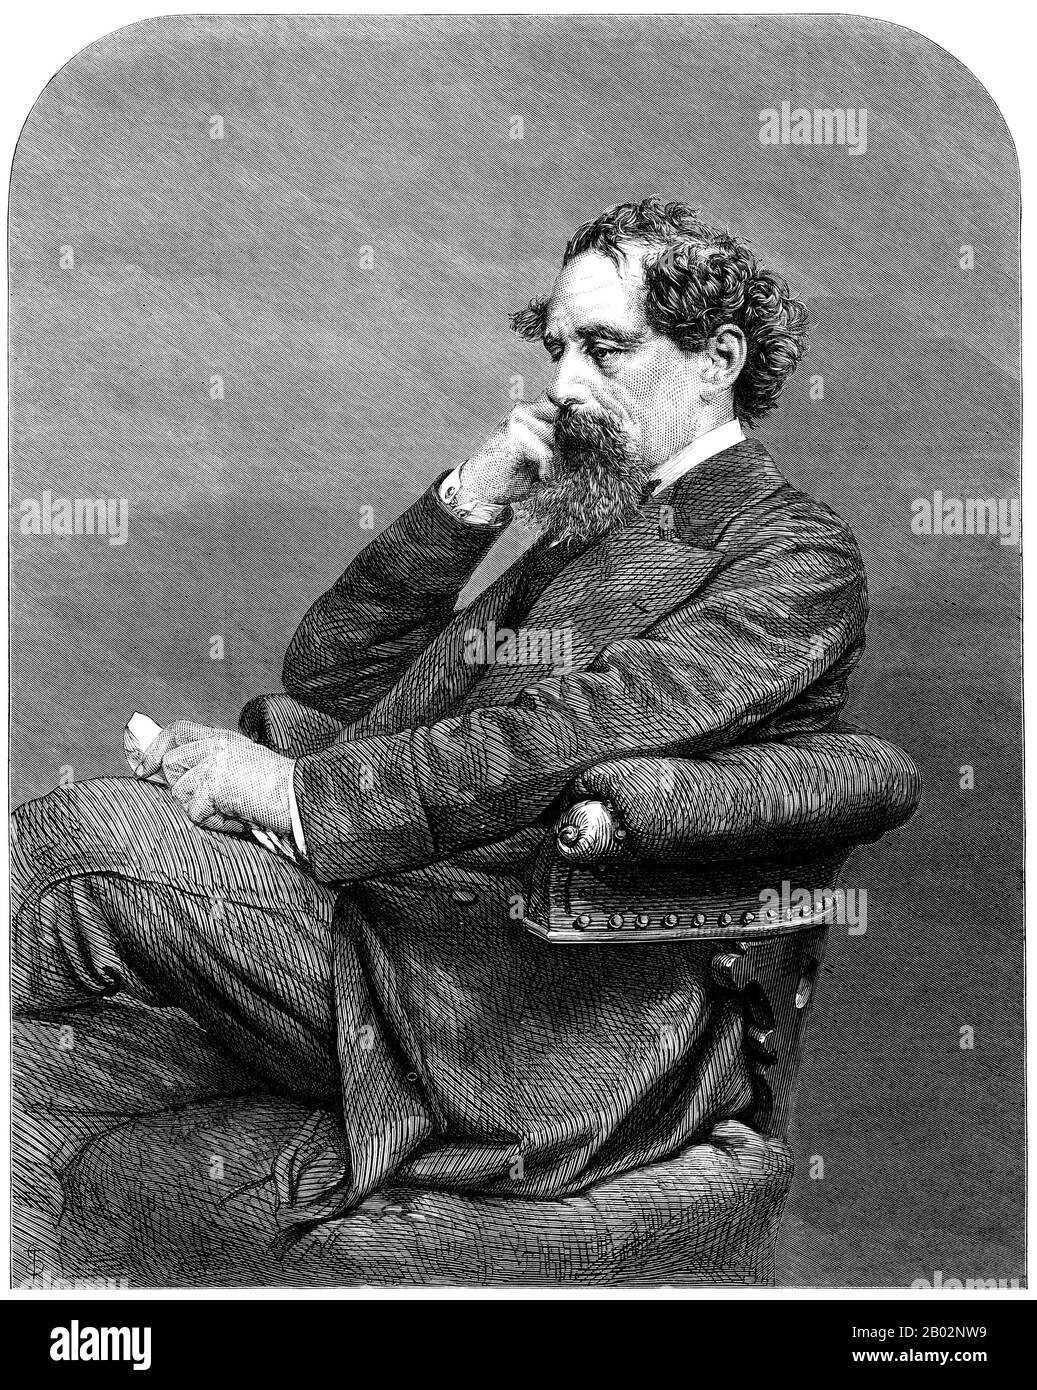 Charles John Huffam Dickens (7. Februar 1812 - 9. Juni 1870) war ein englischer Schriftsteller und Gesellschaftskritiker. Er schuf einige der bekanntesten fiktiven Figuren der Welt und gilt allgemein als der größte Romanautor der viktorianischen Zeit. Während seines Lebens erfreuten sich seine Werke einer beispiellosen Popularität, und bis zum zwanzigsten Jahrhundert wurde er von Kritikern und Gelehrten weithin als literarisches Genie angesehen. Seine Romane und Kurzgeschichten sind weiterhin weit verbreitet. Dickens wurde im englischen Portsmouth geboren und musste die Schule verlassen, um in einer Fabrik zu arbeiten, als sein Vater ins Schuldnergefängnis geworfen wurde. Altho Stockfoto